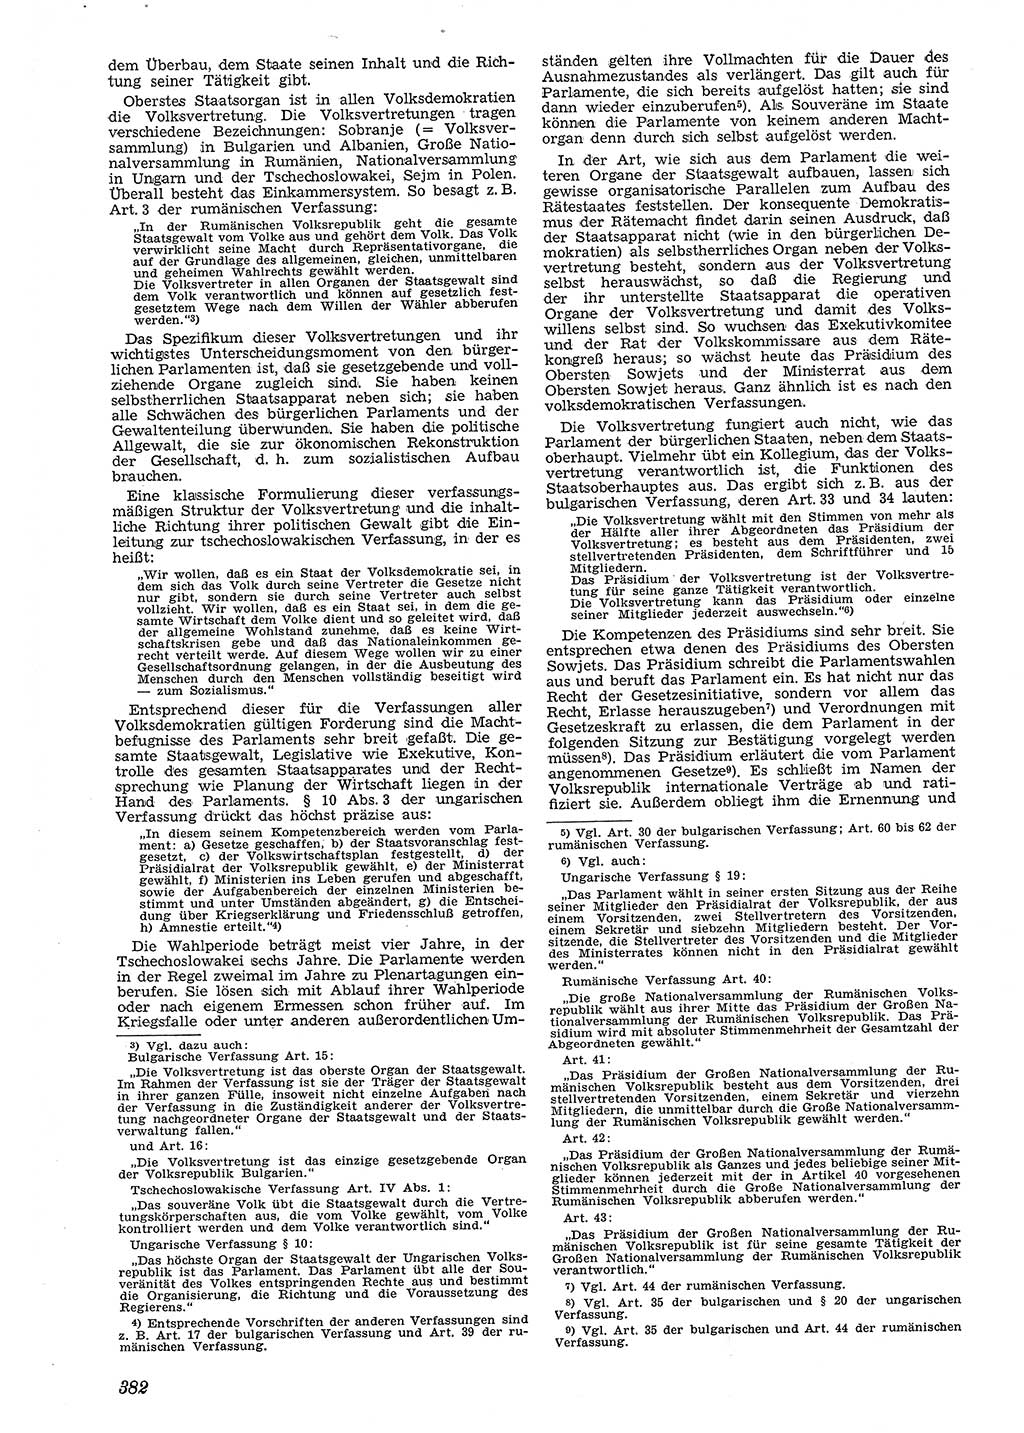 Neue Justiz (NJ), Zeitschrift für Recht und Rechtswissenschaft [Deutsche Demokratische Republik (DDR)], 4. Jahrgang 1950, Seite 382 (NJ DDR 1950, S. 382)